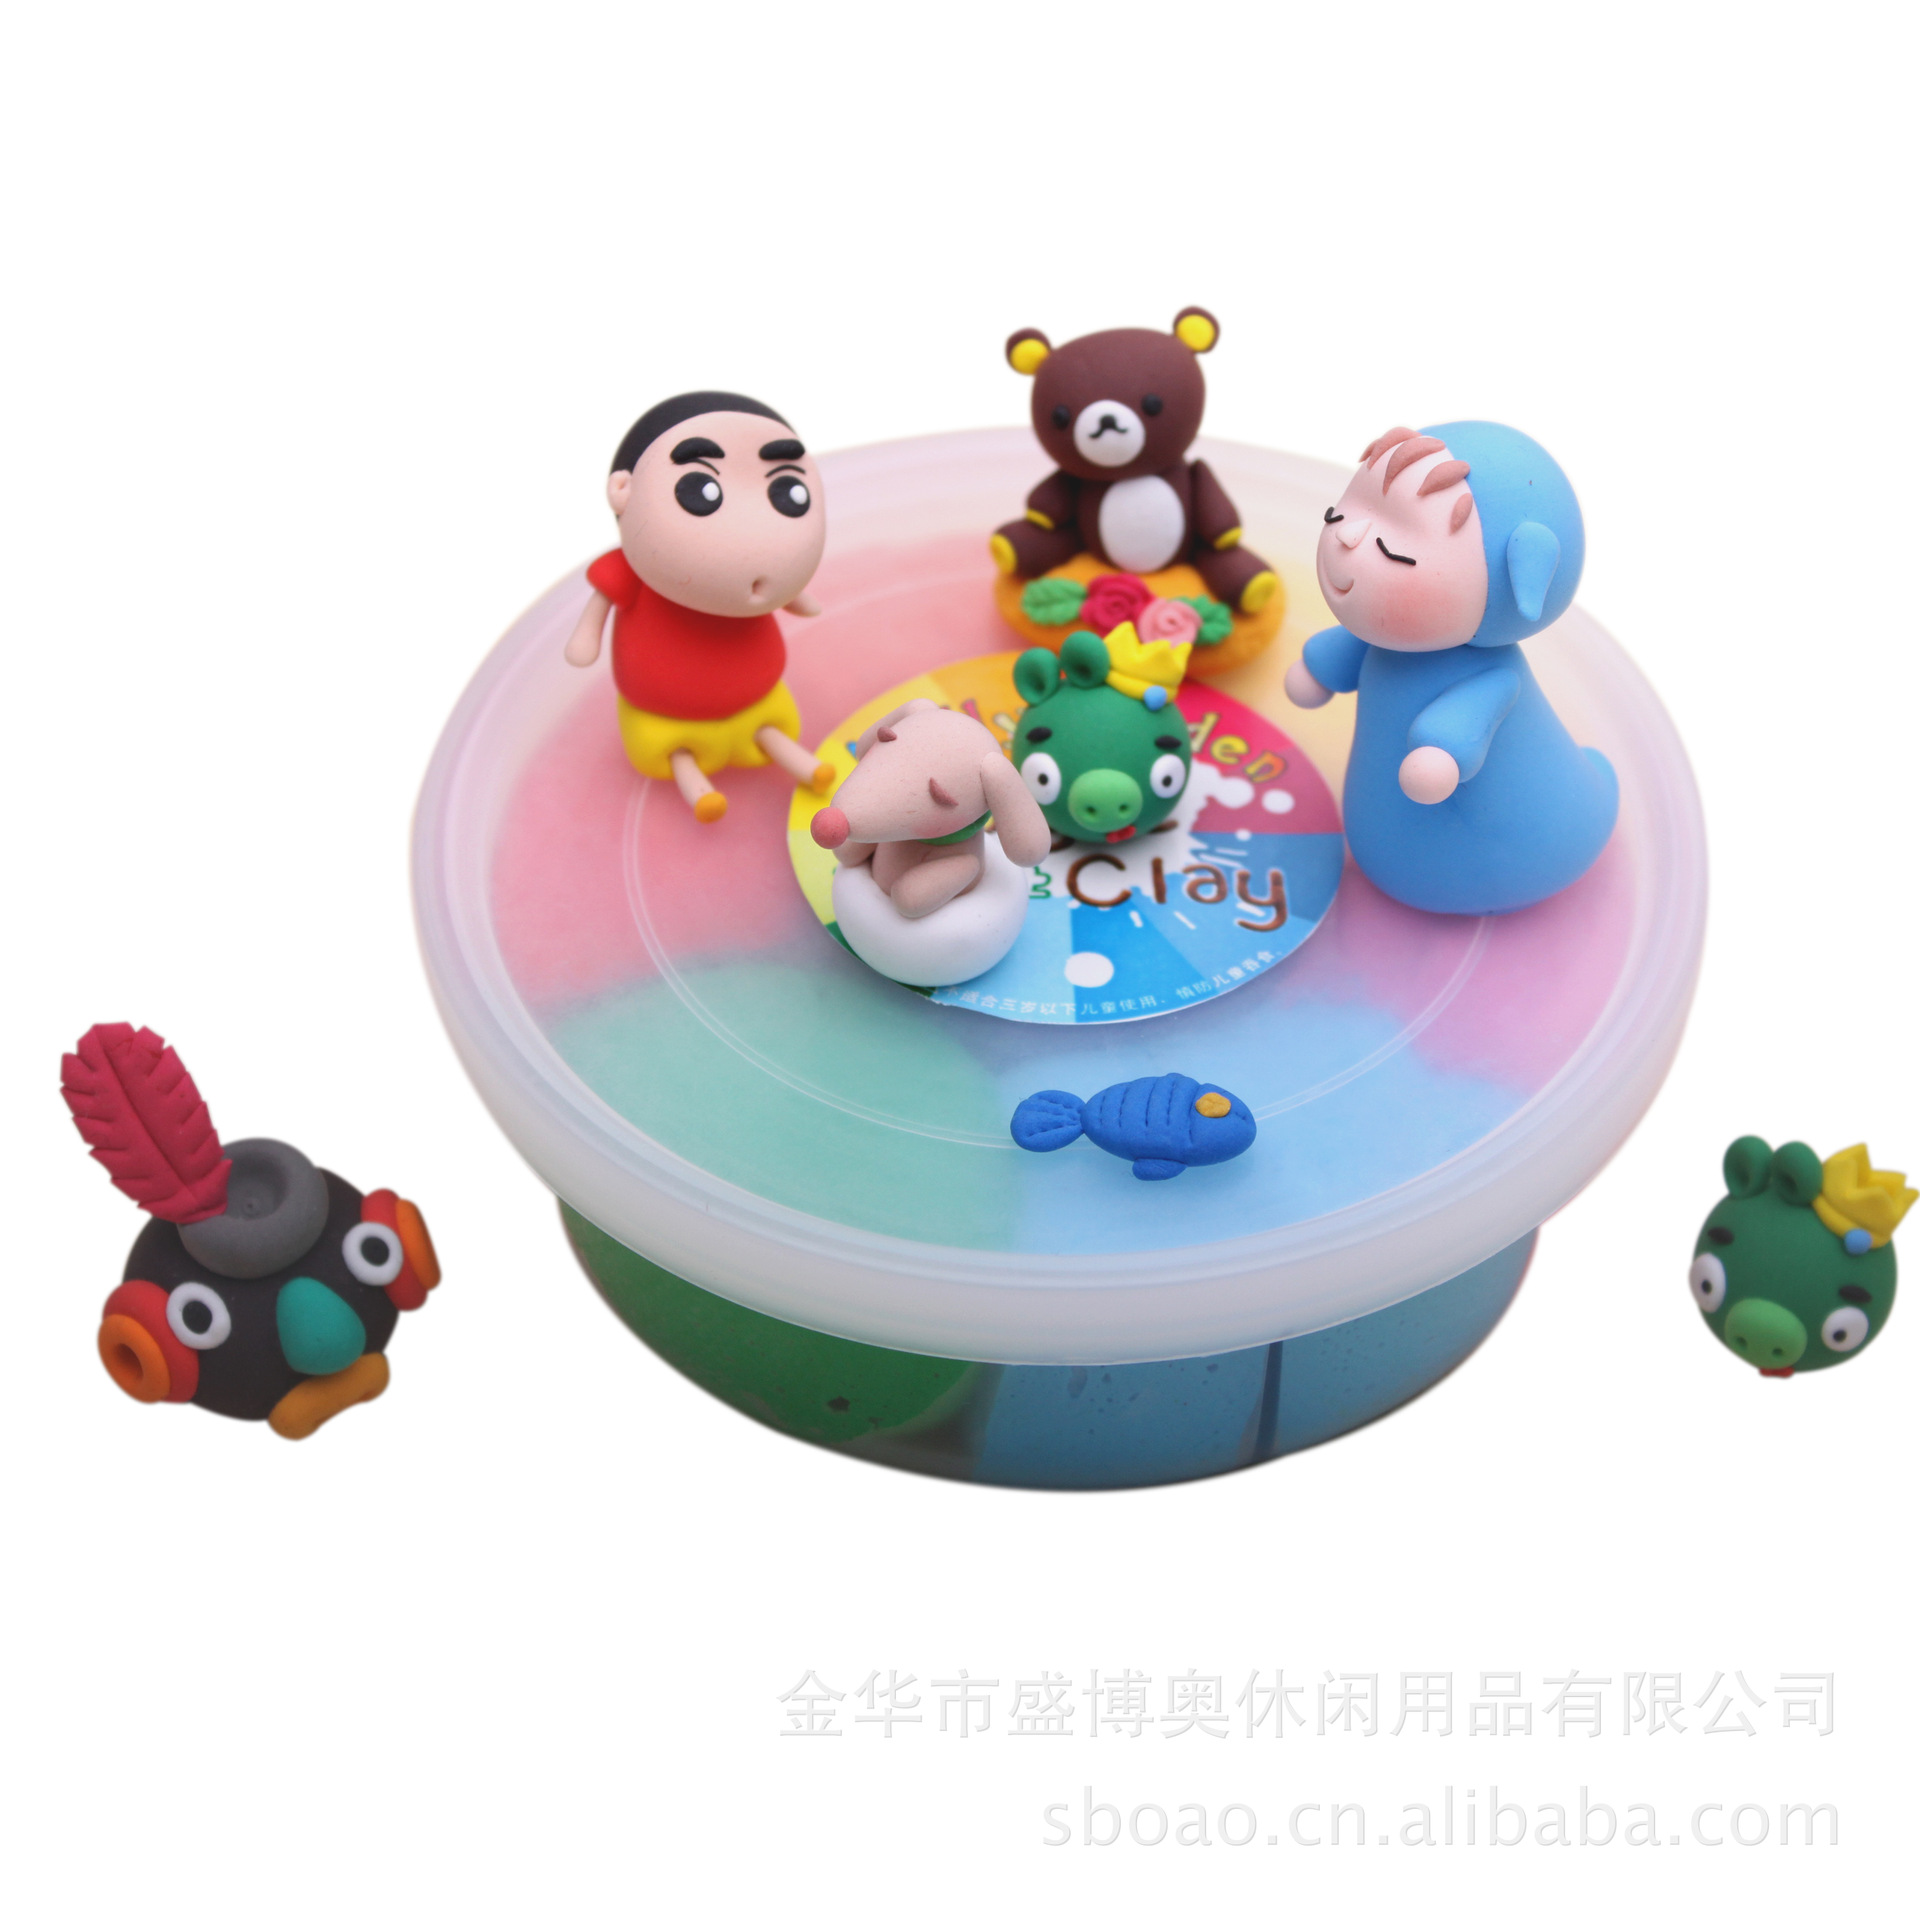 【超级粘土 3D彩泥玩具 卡通形象 安全环保7色